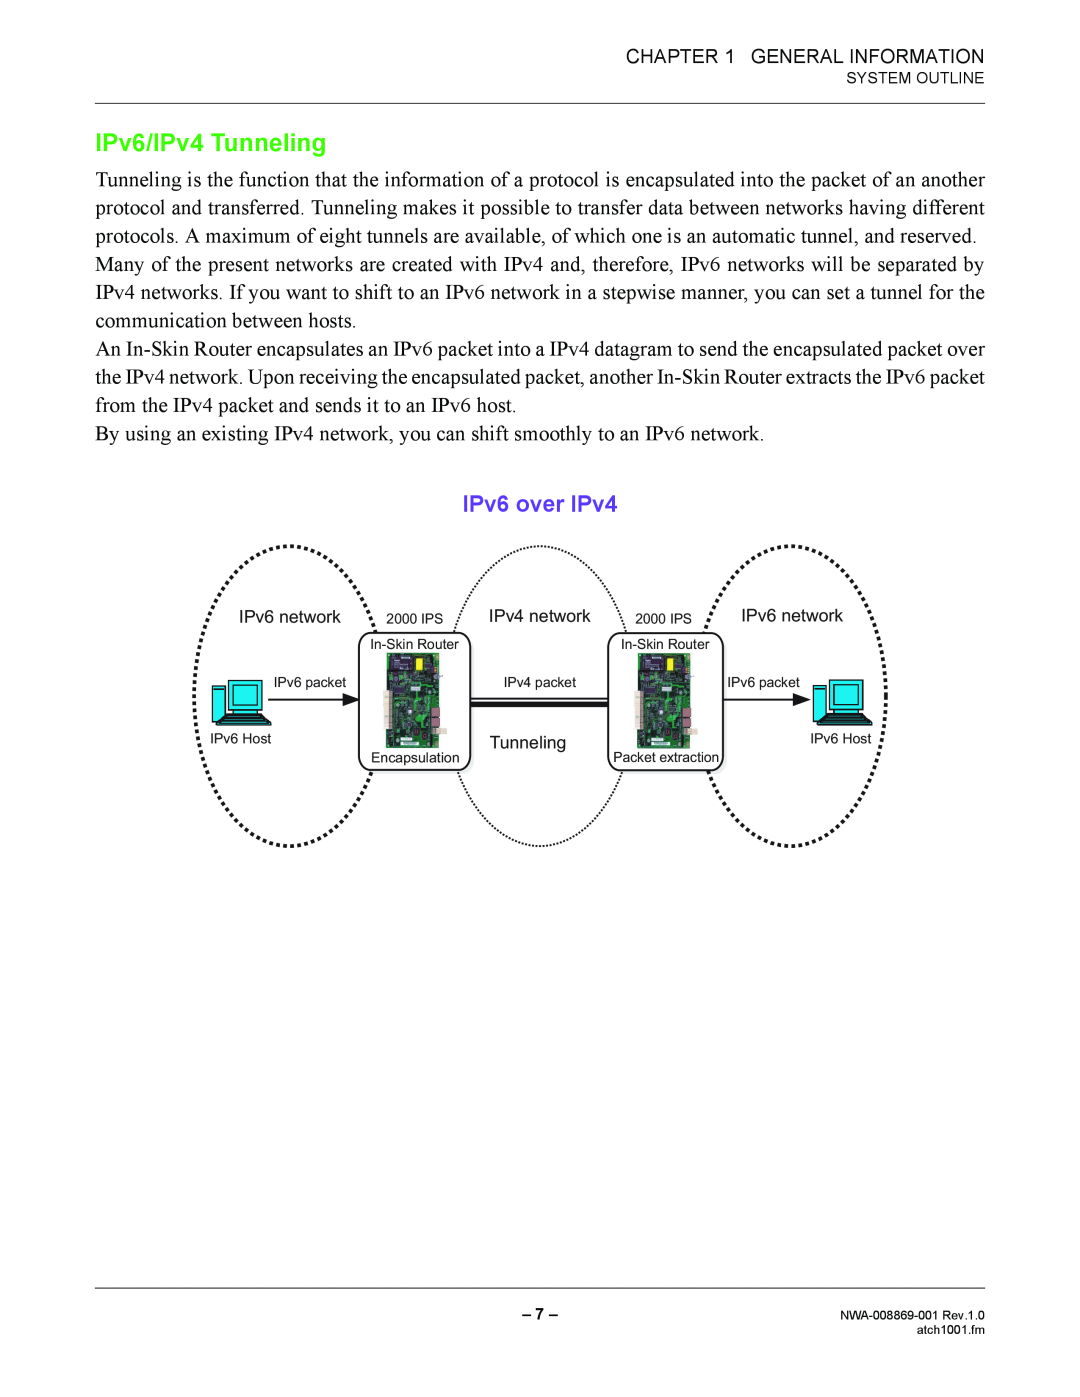 NEC NWA-008869-001 manual IPv6/IPv4 Tunneling, IPv6 over IPv4 